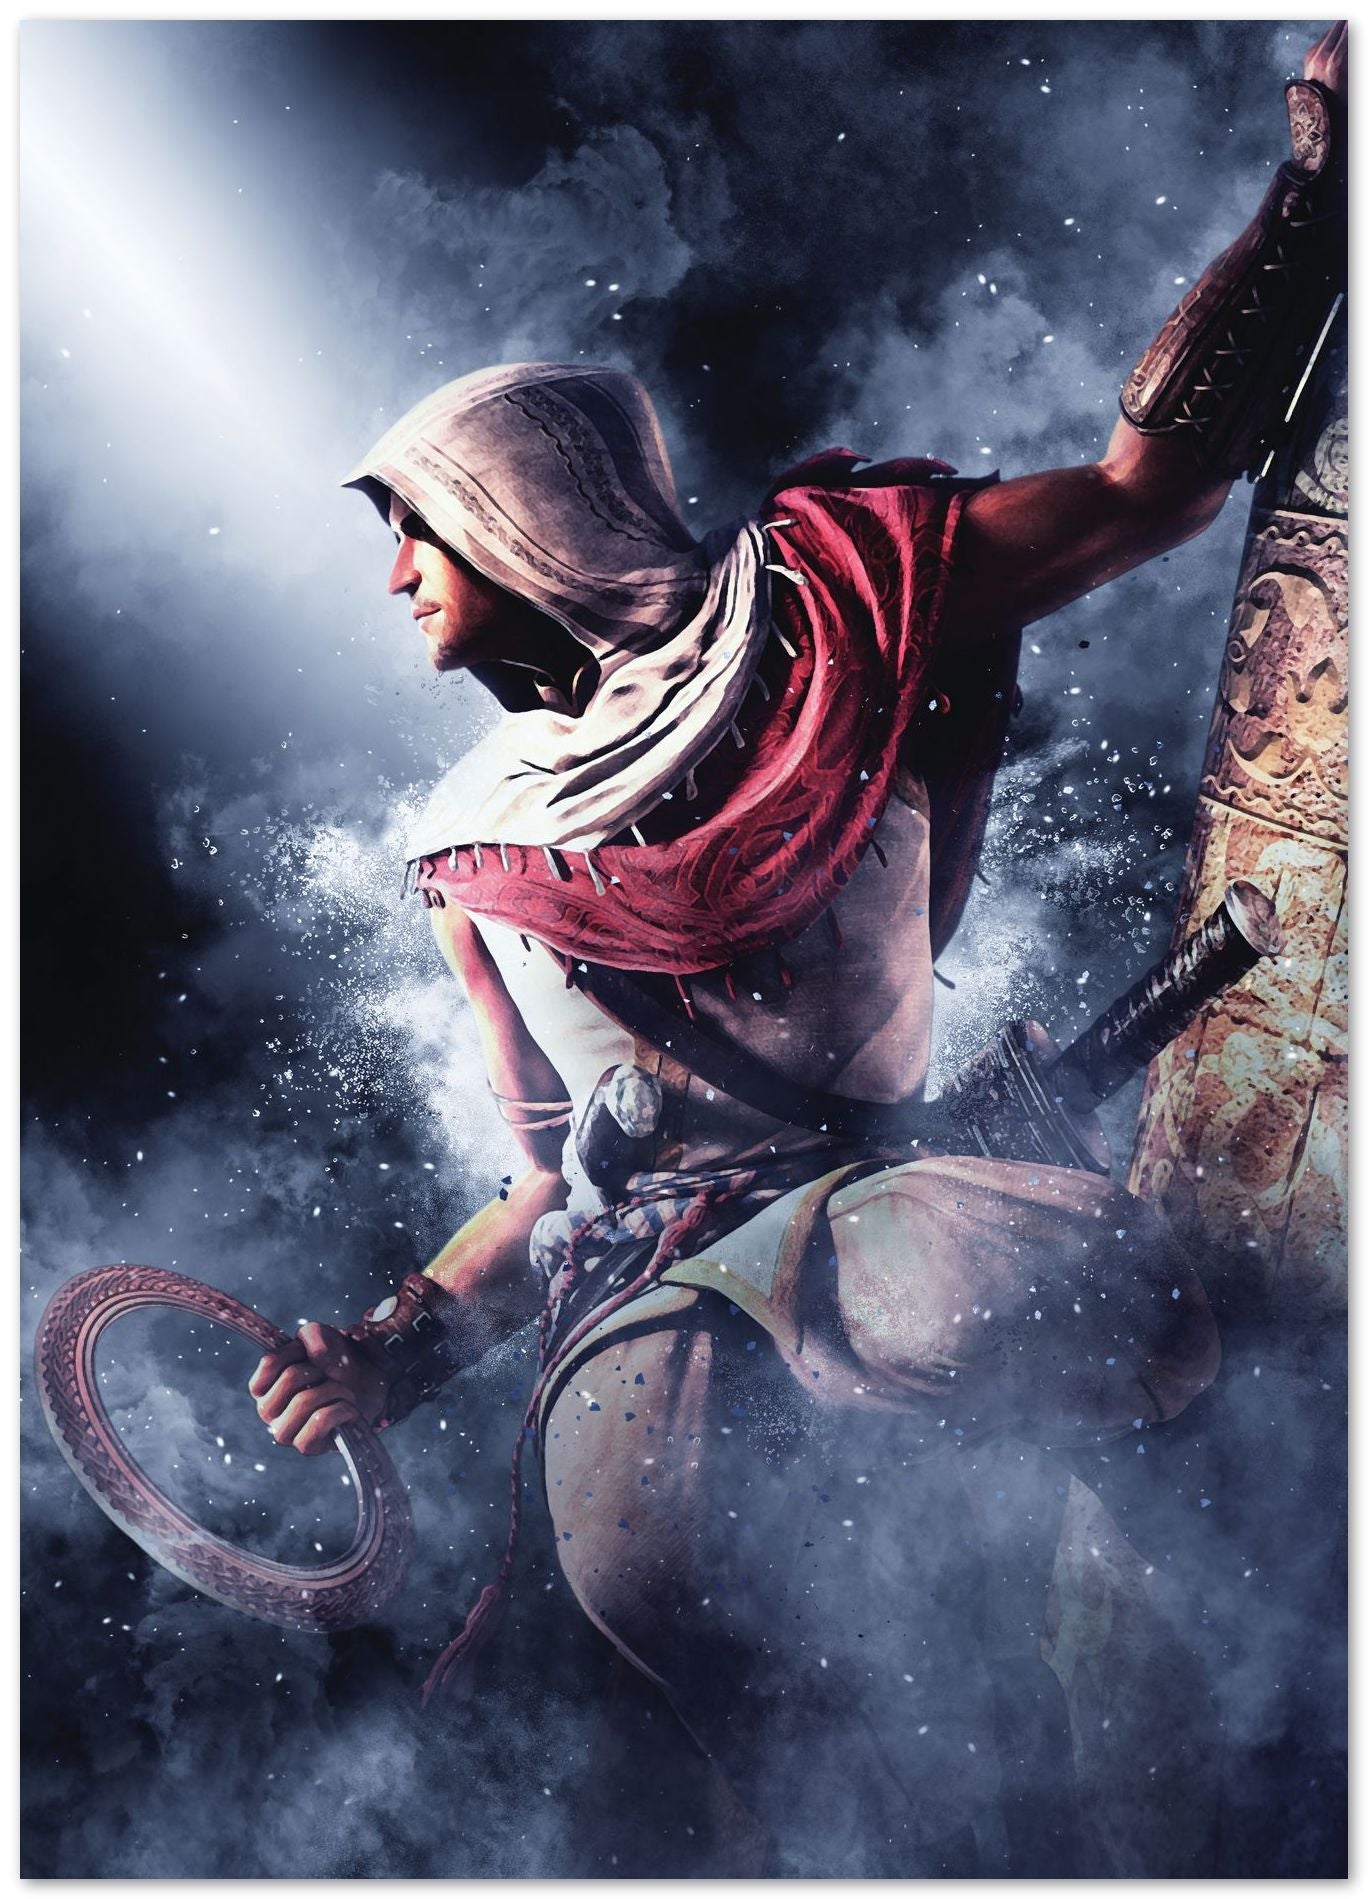 Assassin's Creed Chronicles India - @Masahiro_art